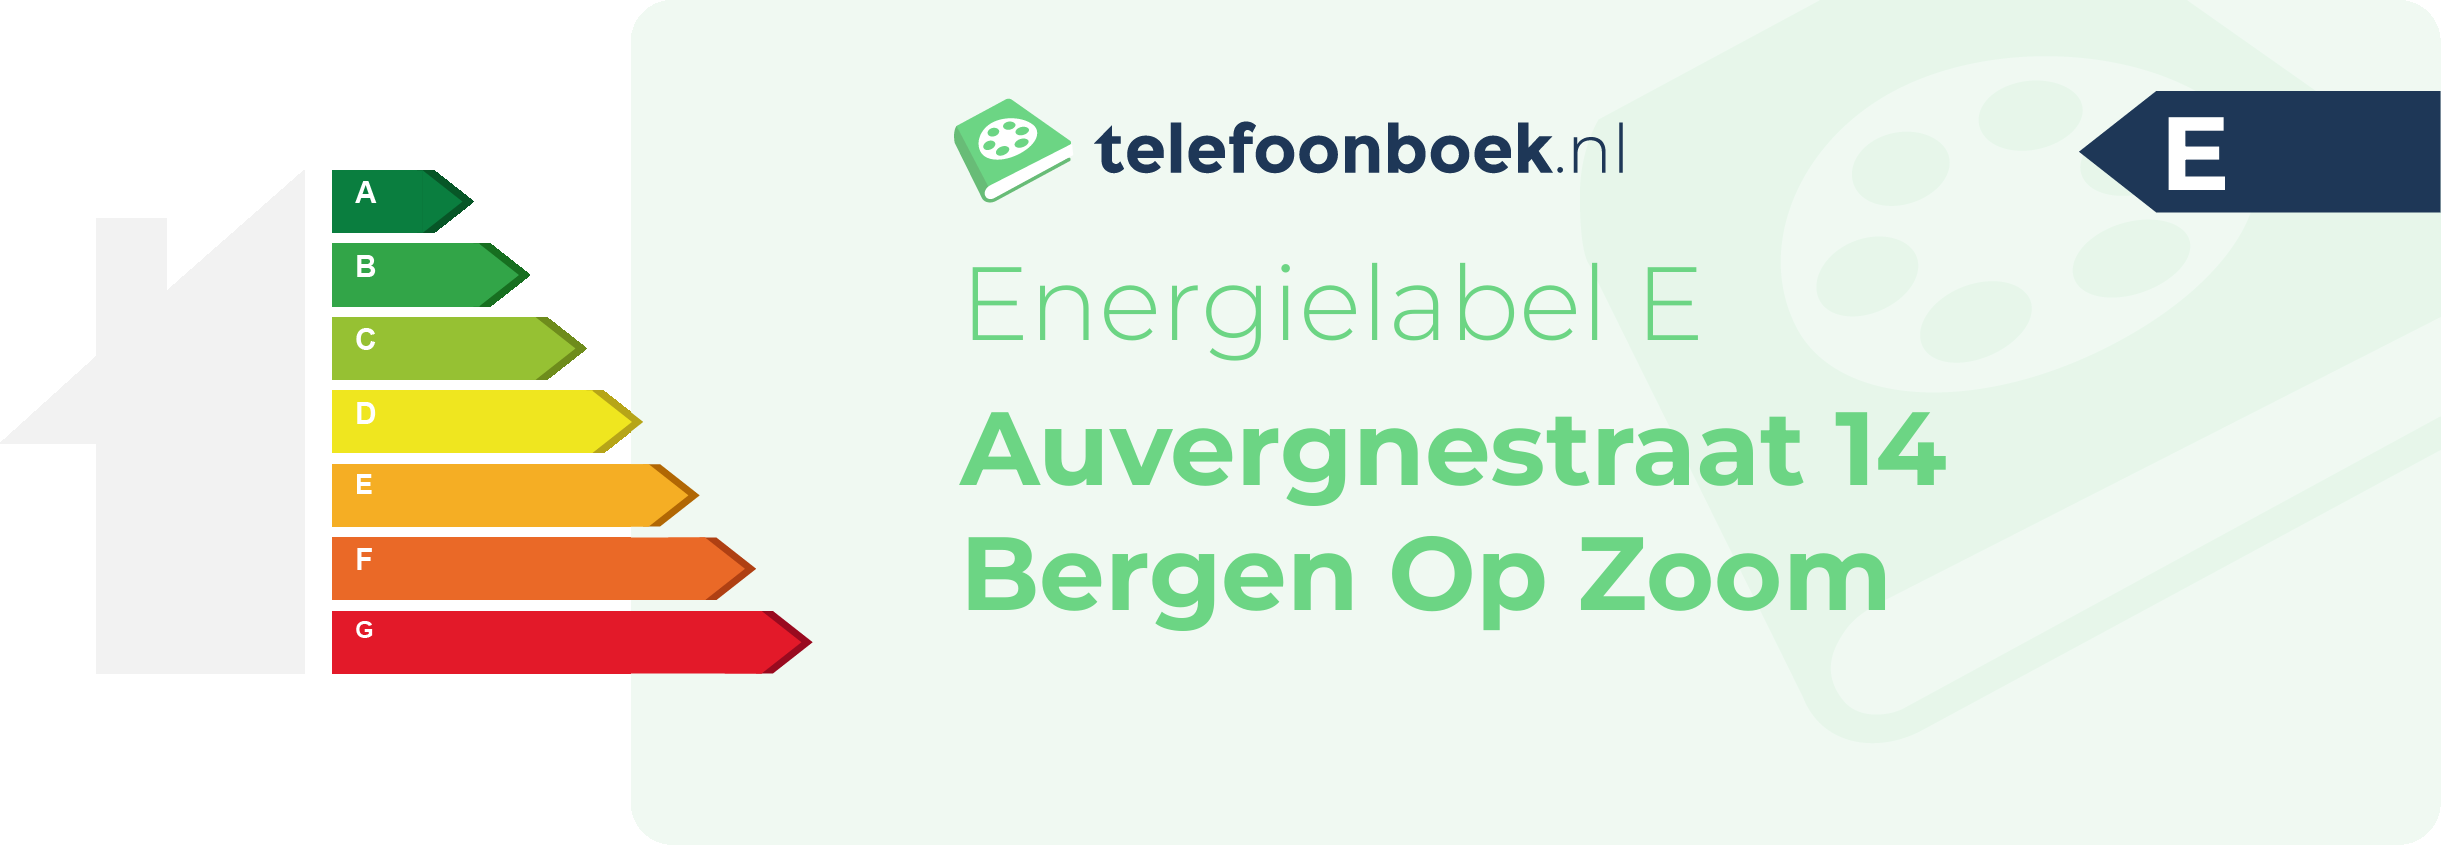 Energielabel Auvergnestraat 14 Bergen Op Zoom